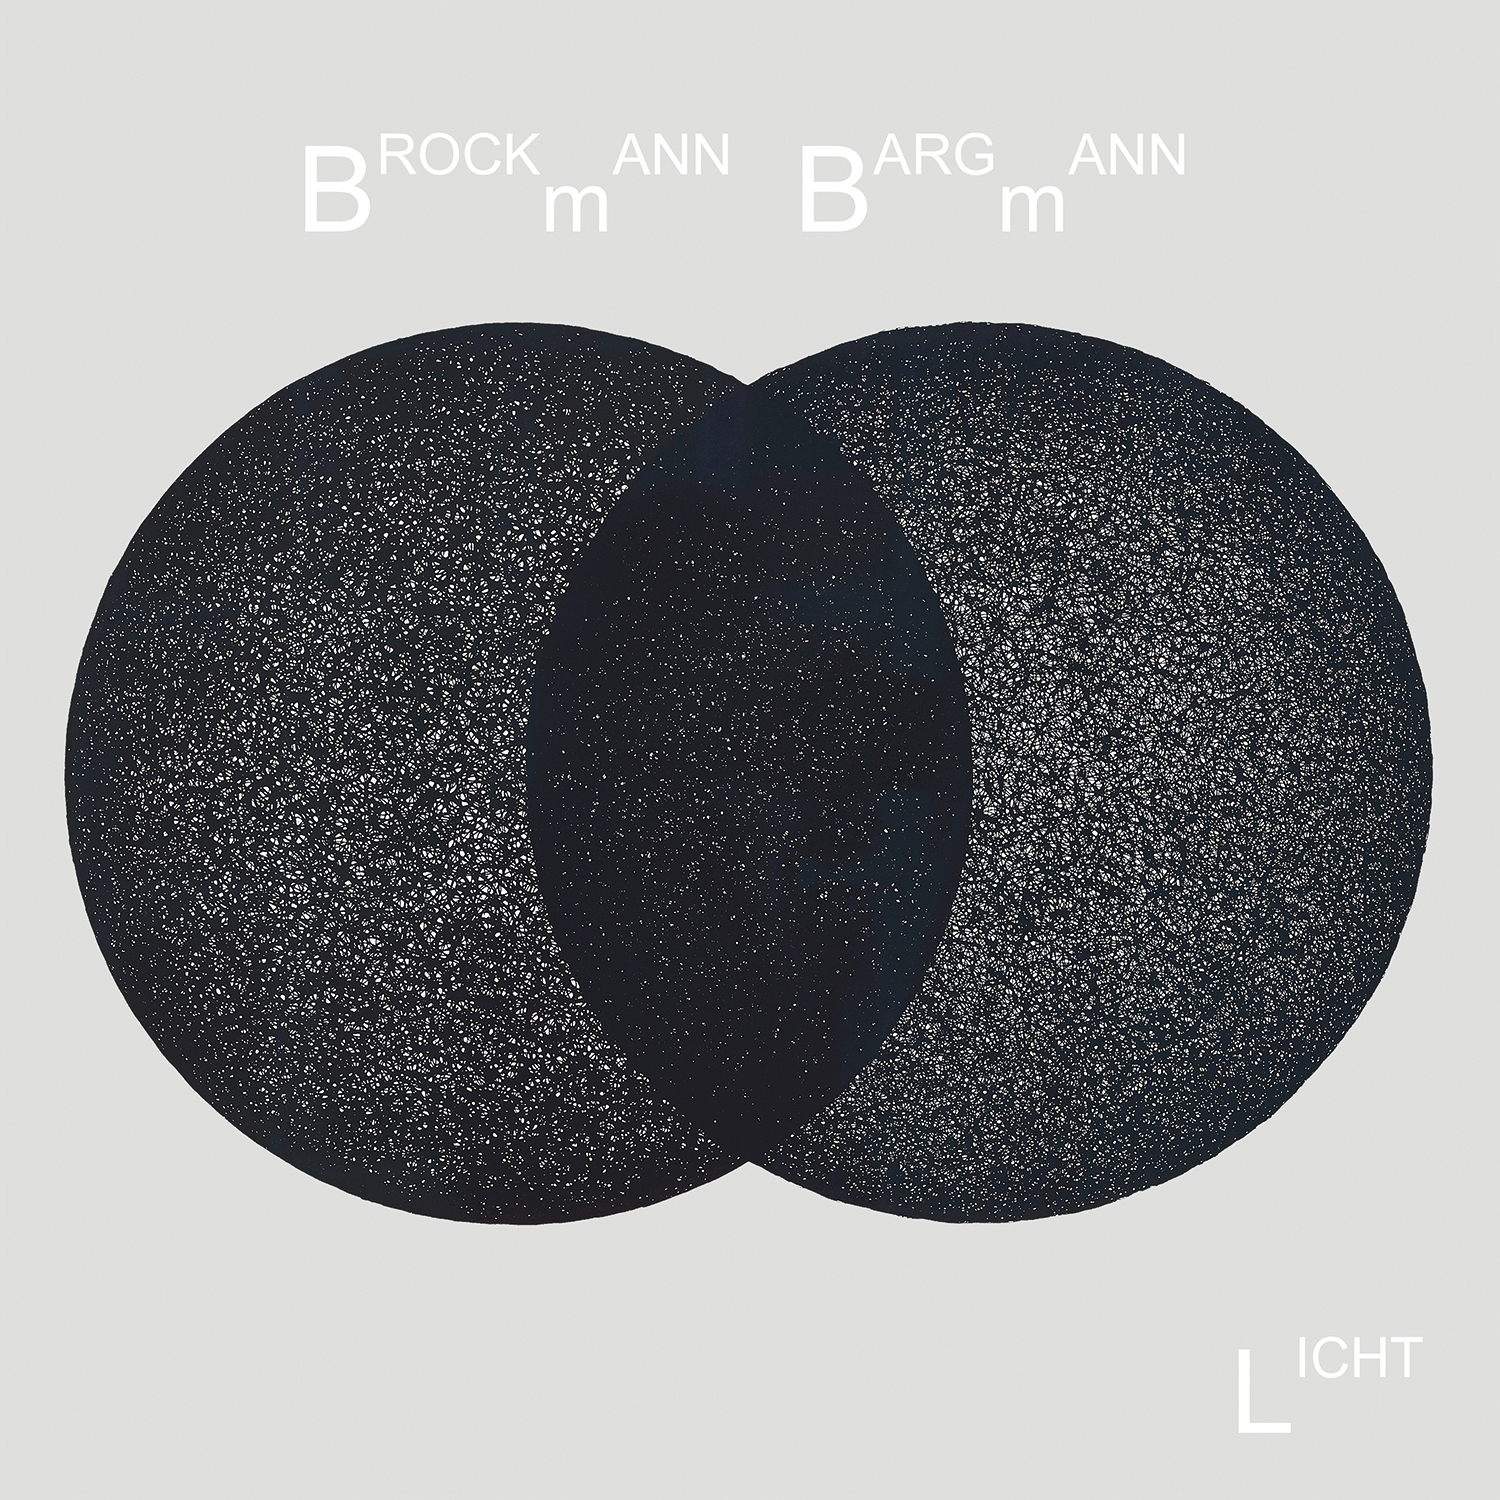 Brockmann // Bargmann - Licht